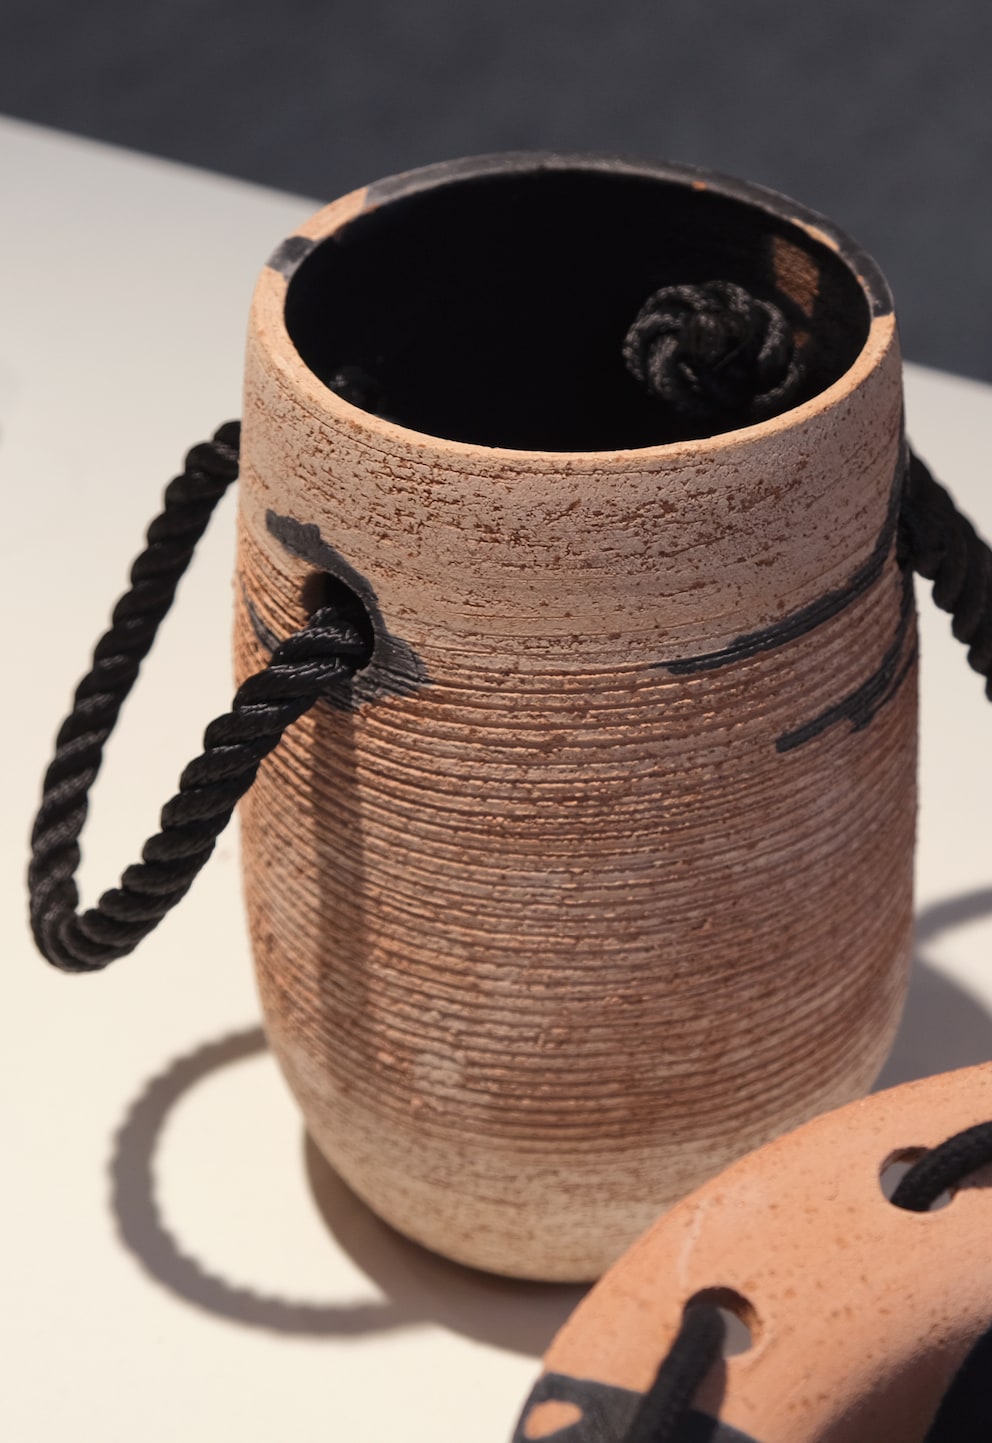 Fehlt nur noch der Seemannsknoten: Die Keramikvasen von Lisa Maïofiss haben Seile für einen besseren Griff.